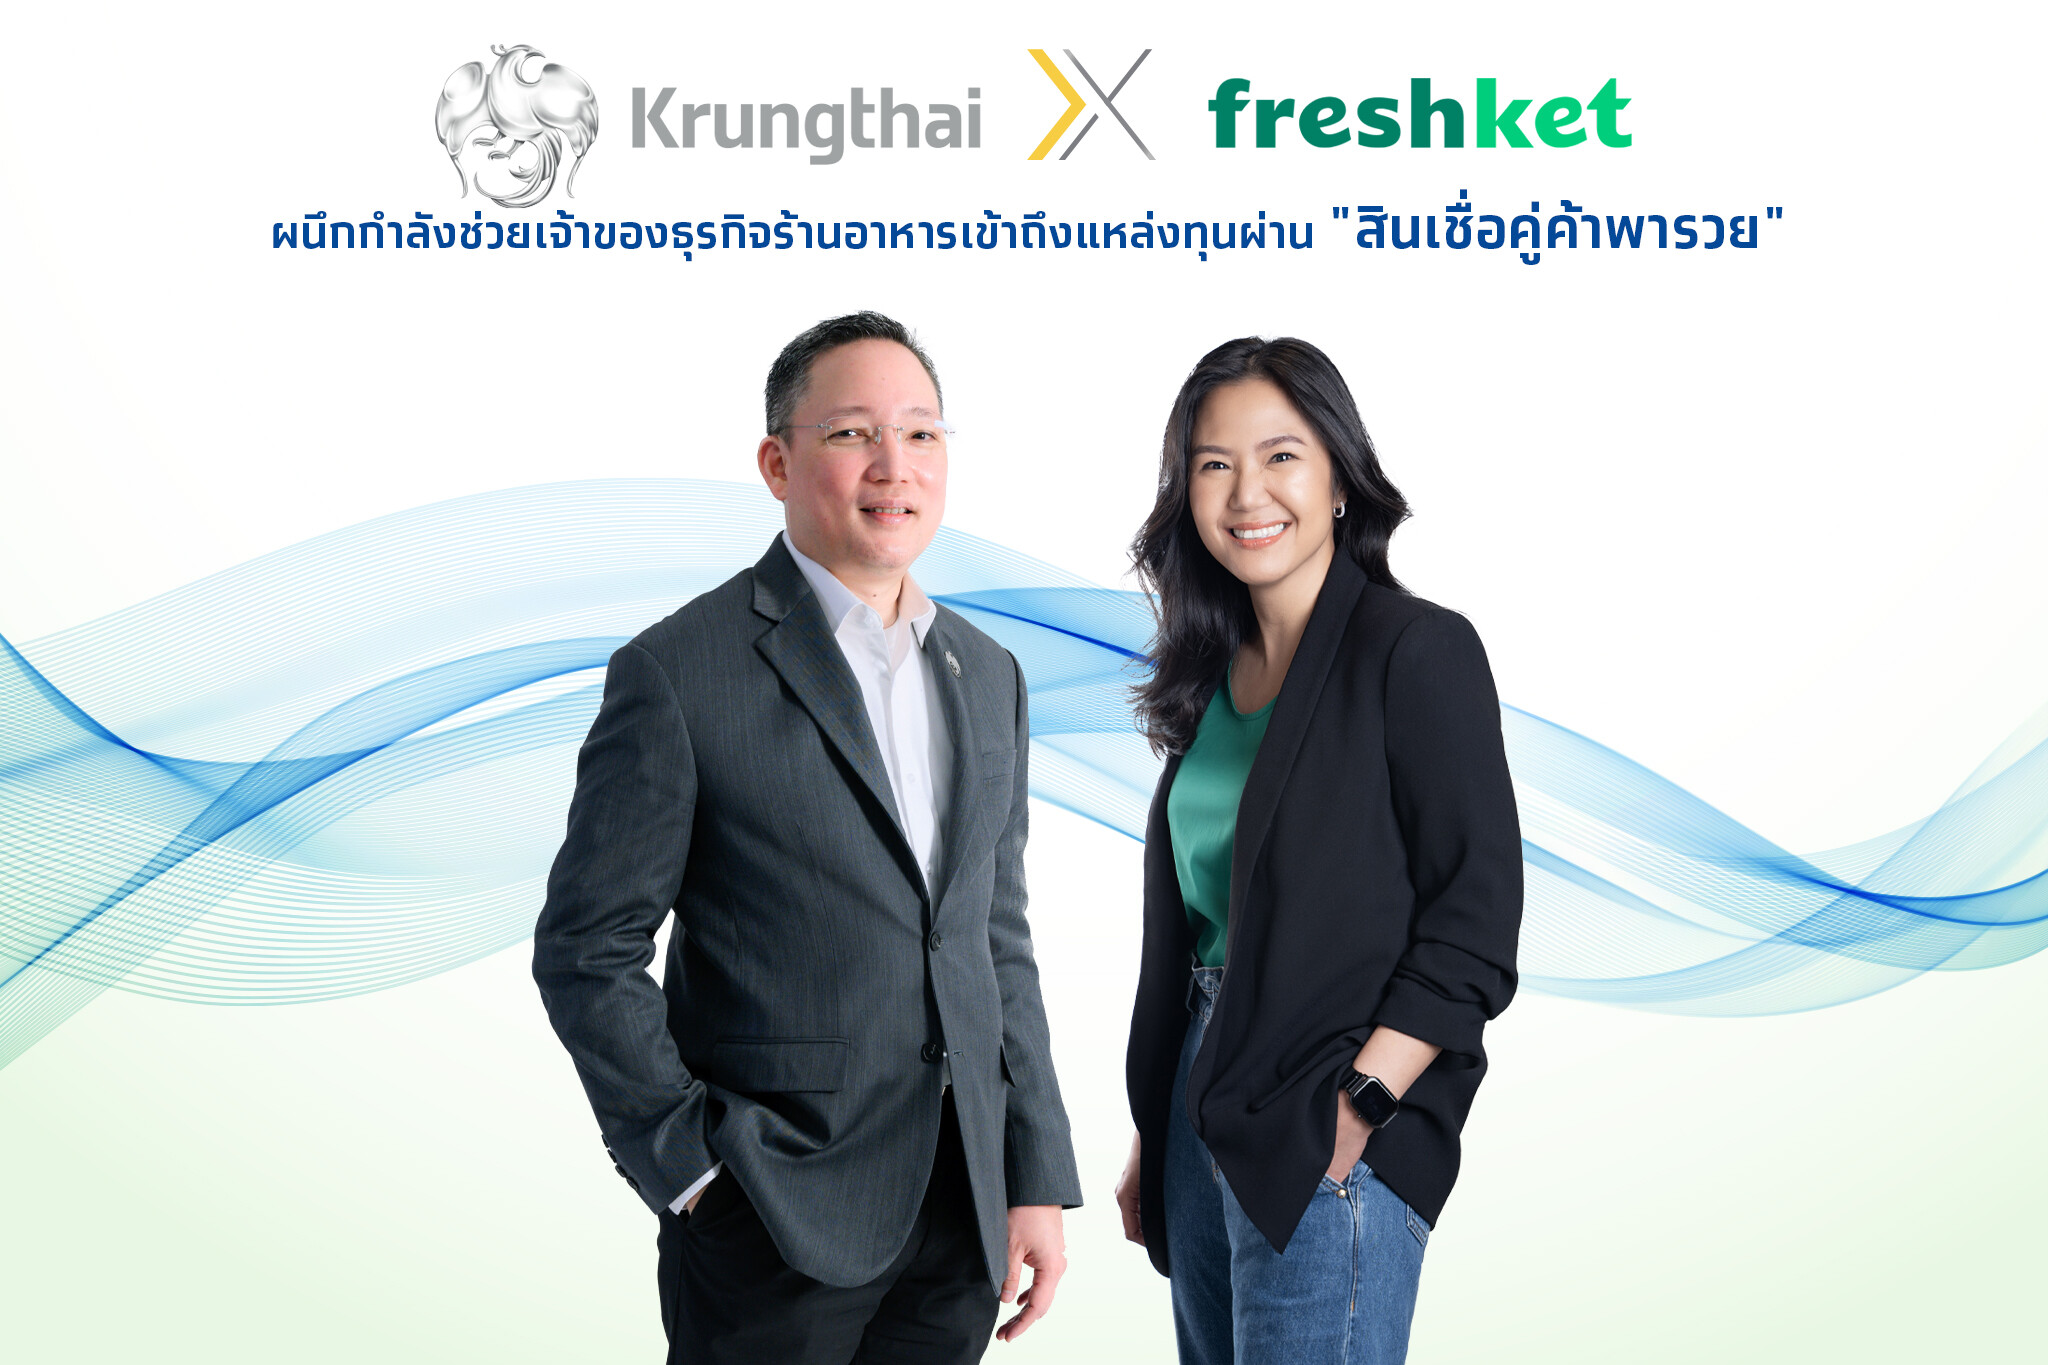 กรุงไทยผนึก freshket ช่วย SME ร้านอาหาร ให้เข้าถึงแหล่งทุนผ่าน "สินเชื่อคู่ค้าพารวย" ฝ่าวิกฤตเศรษฐกิจ